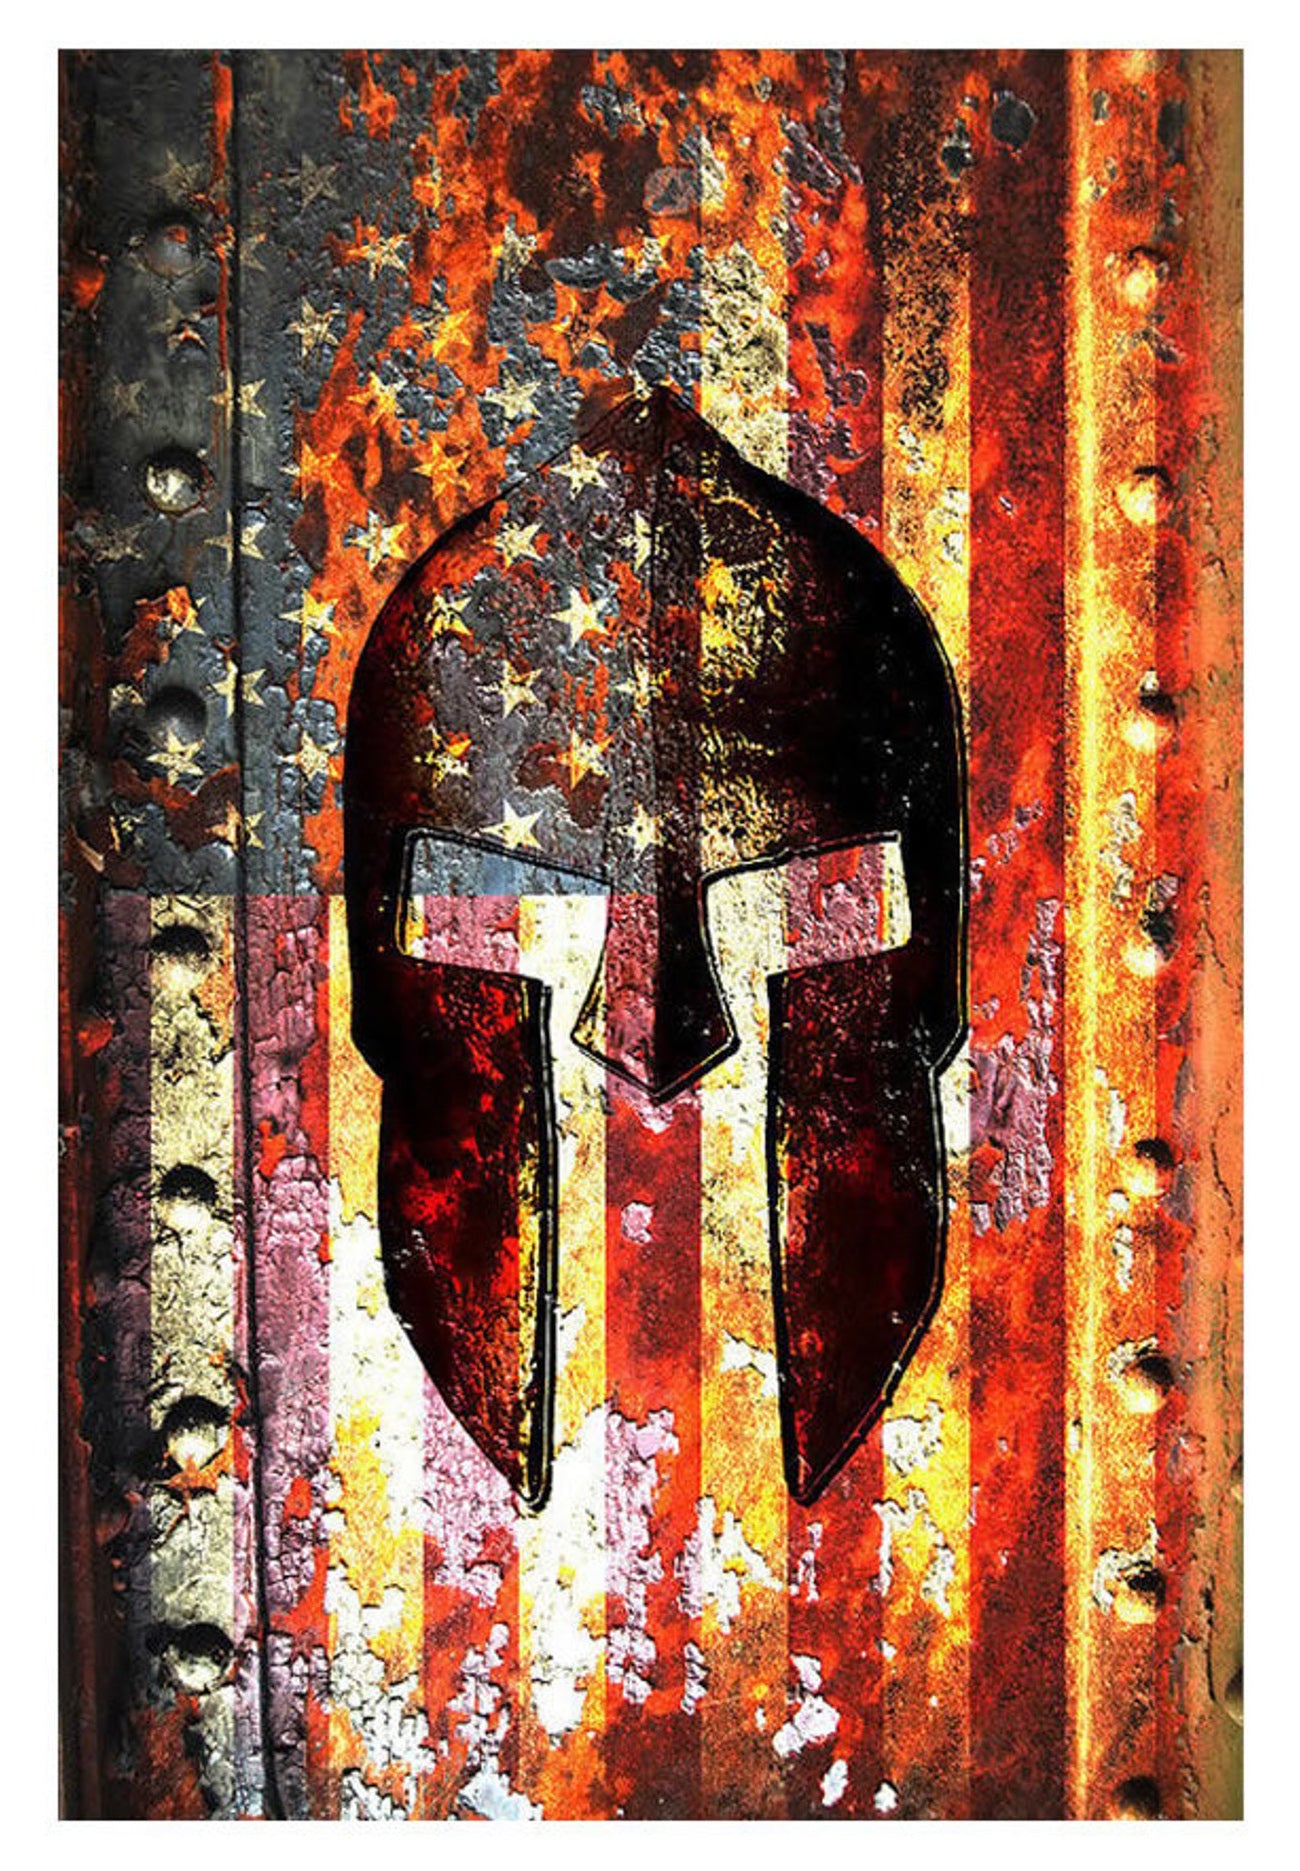 Spartan Themed Wall Art Print - American Flag & Spartan Helmet on Rusted Metal Door Print on Archival Paper